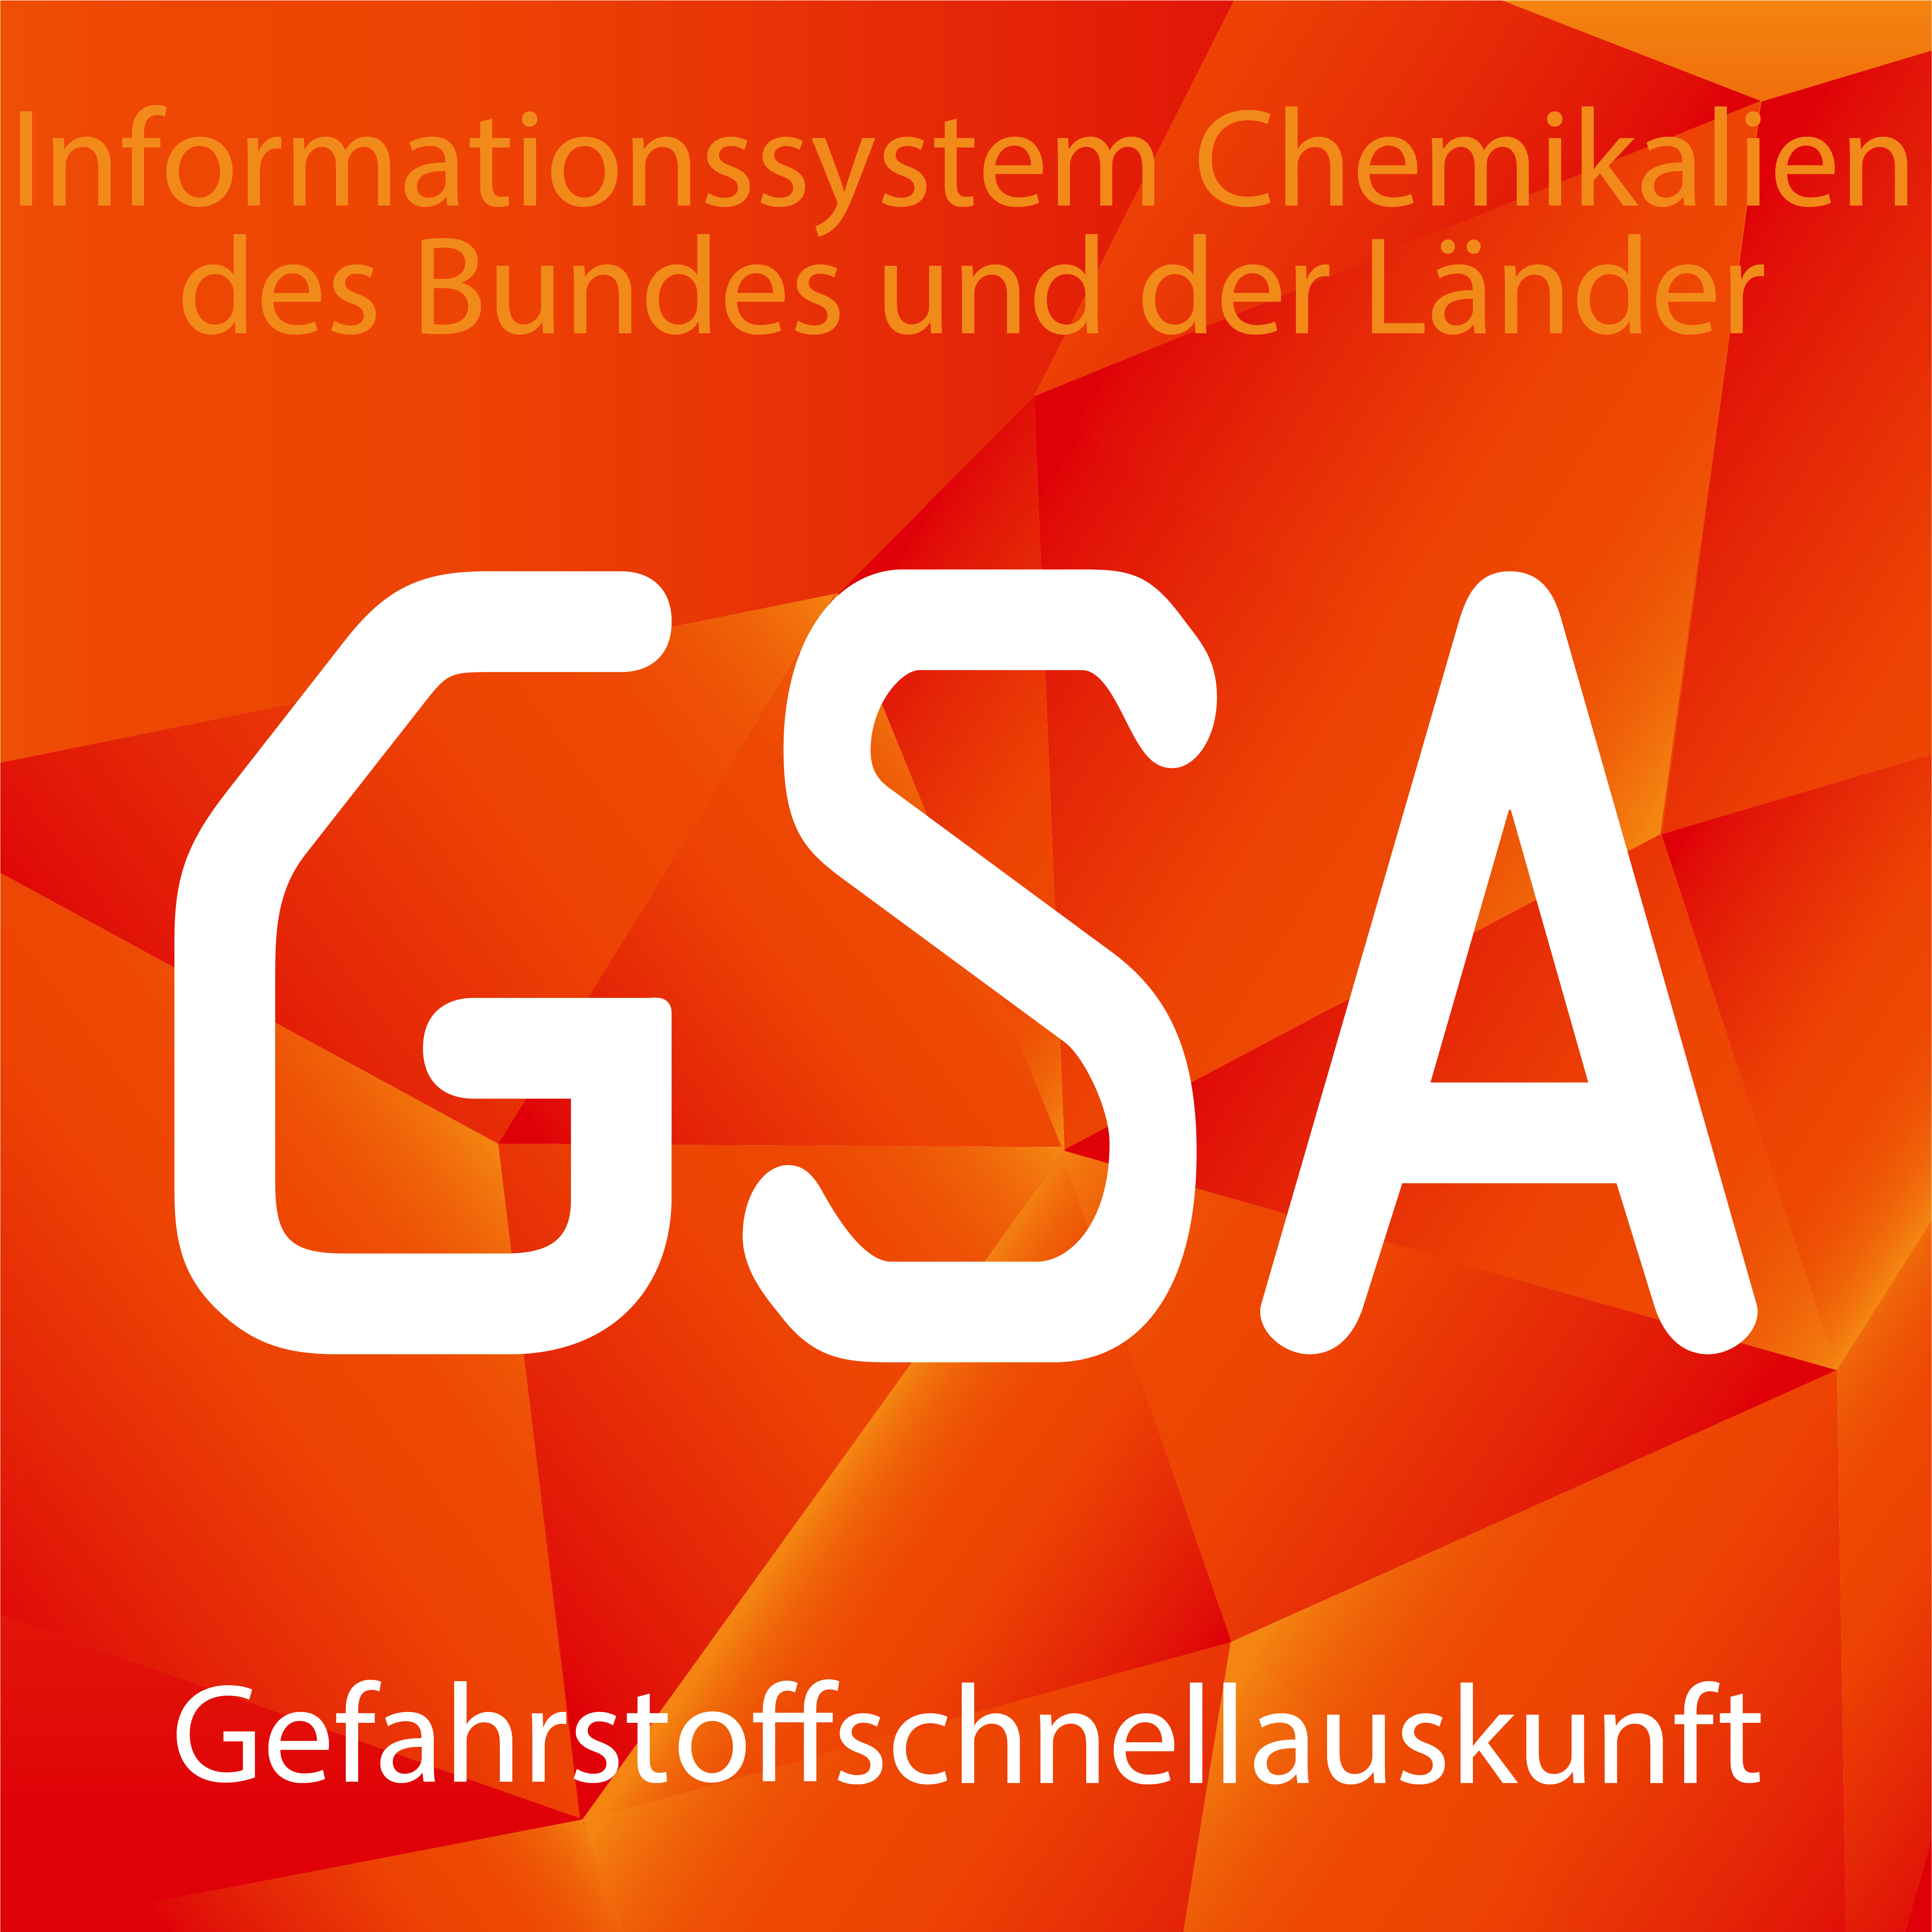 Die drei Logos von ChemInfo: ChI in grün für die Online-Version, CiA in blau für die App Chemie im Alltag und GSA in orange für die Gefahrstoffschnellauskunft